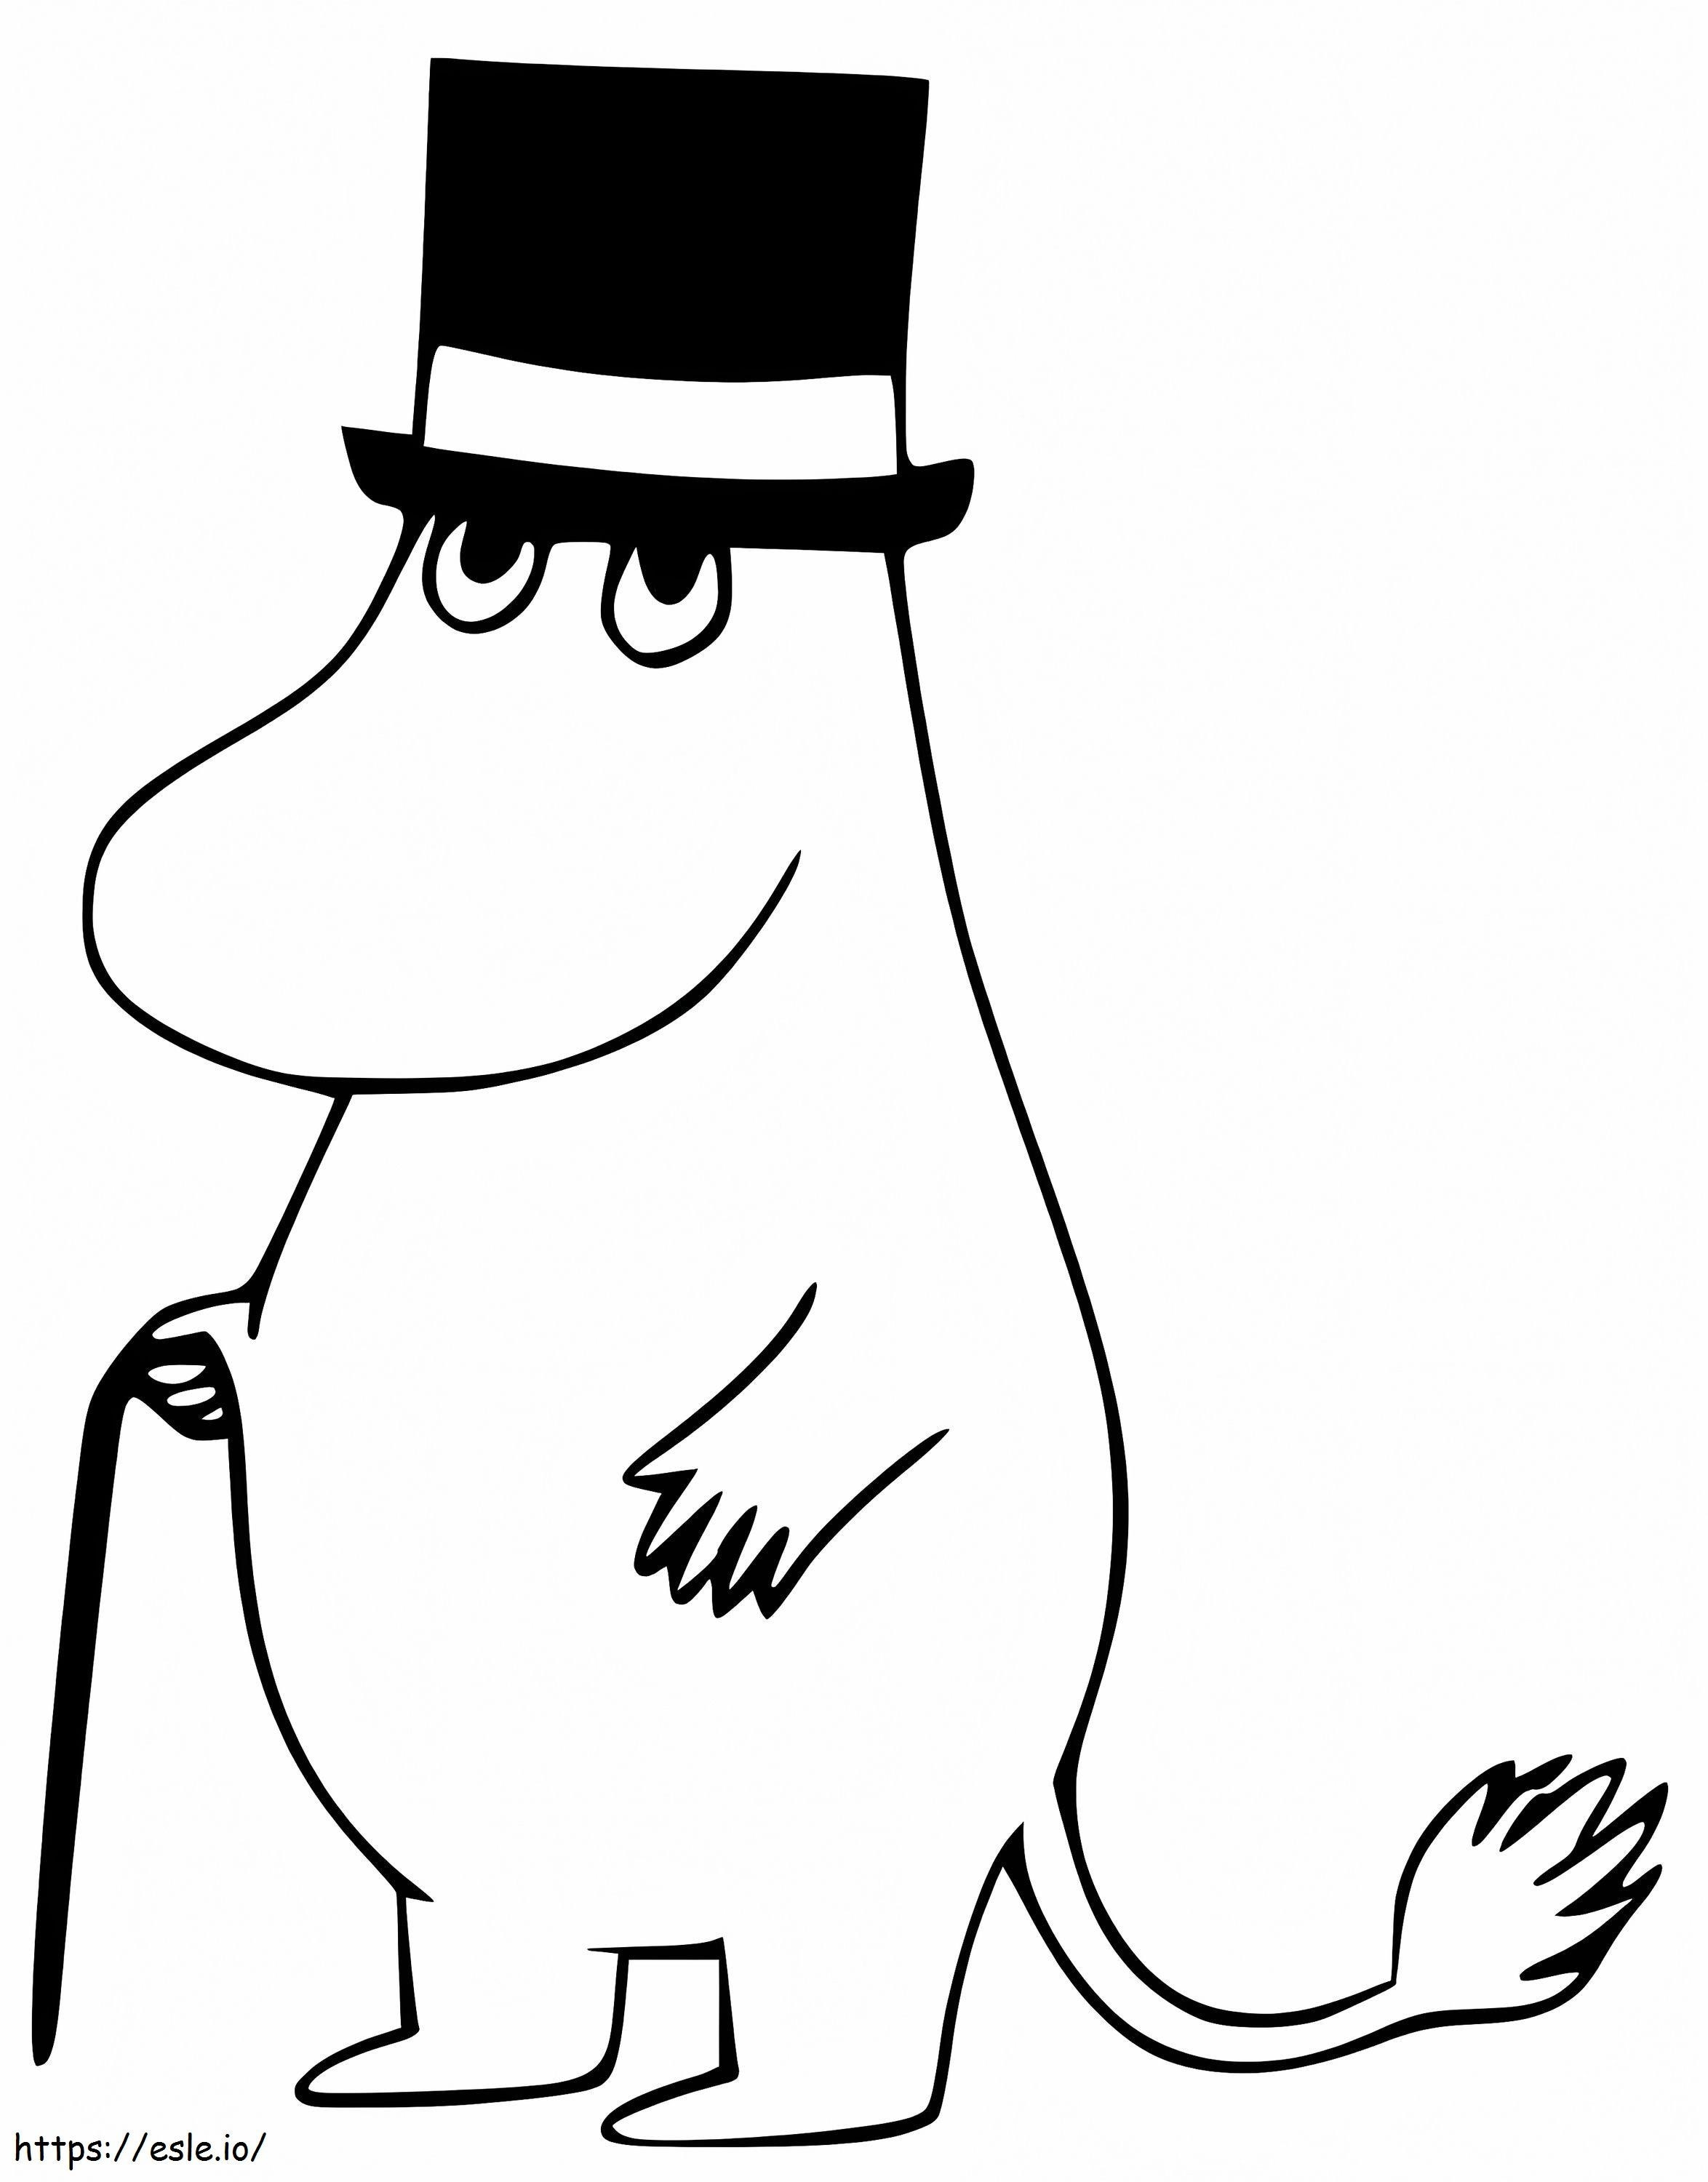 Coloriage Moominpappa De Moomin à imprimer dessin